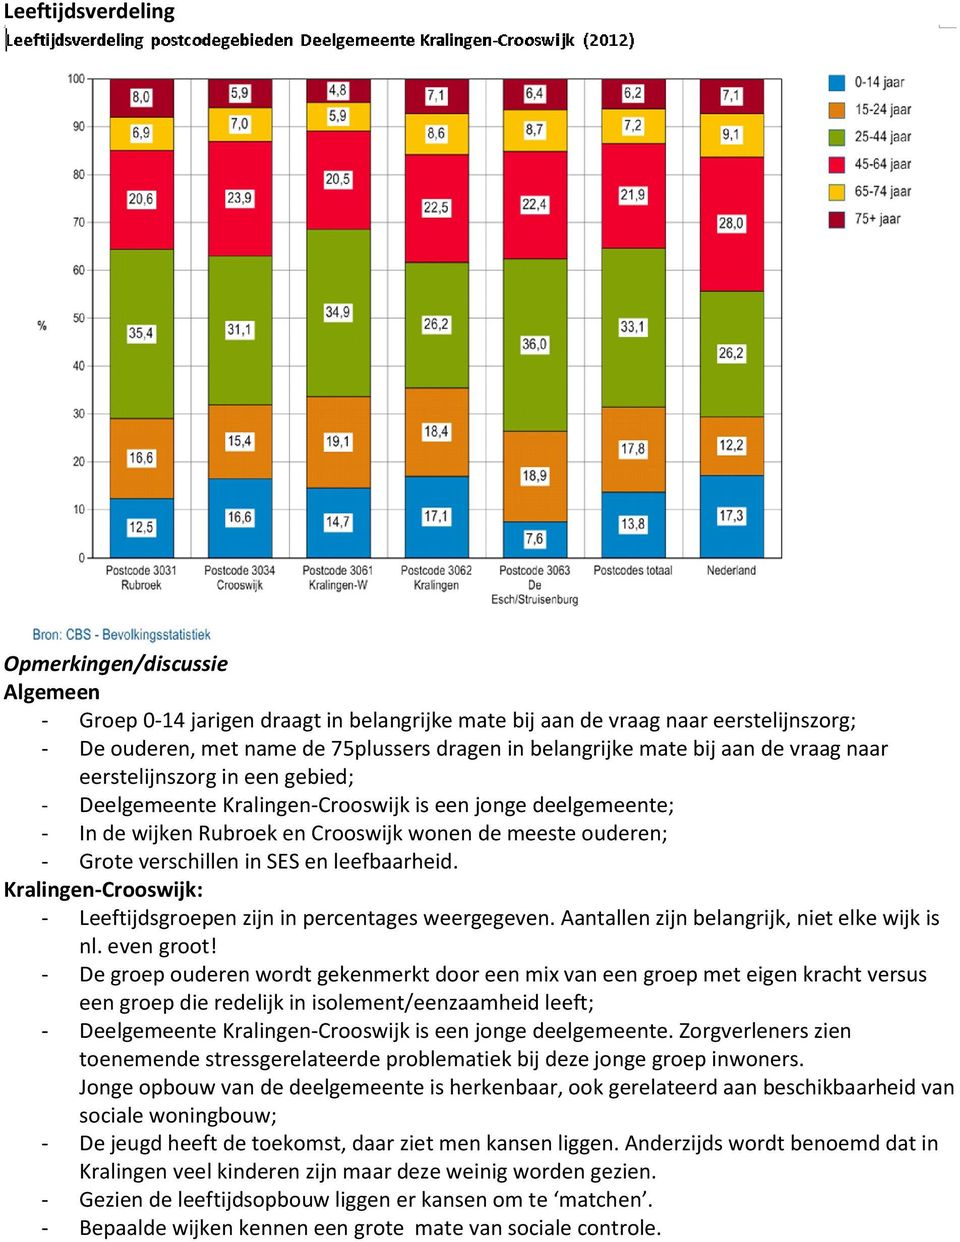 leefbaarheid. Kralingen-Crooswijk: - Leeftijdsgroepen zijn in percentages weergegeven. Aantallen zijn belangrijk, niet elke wijk is nl. even groot!